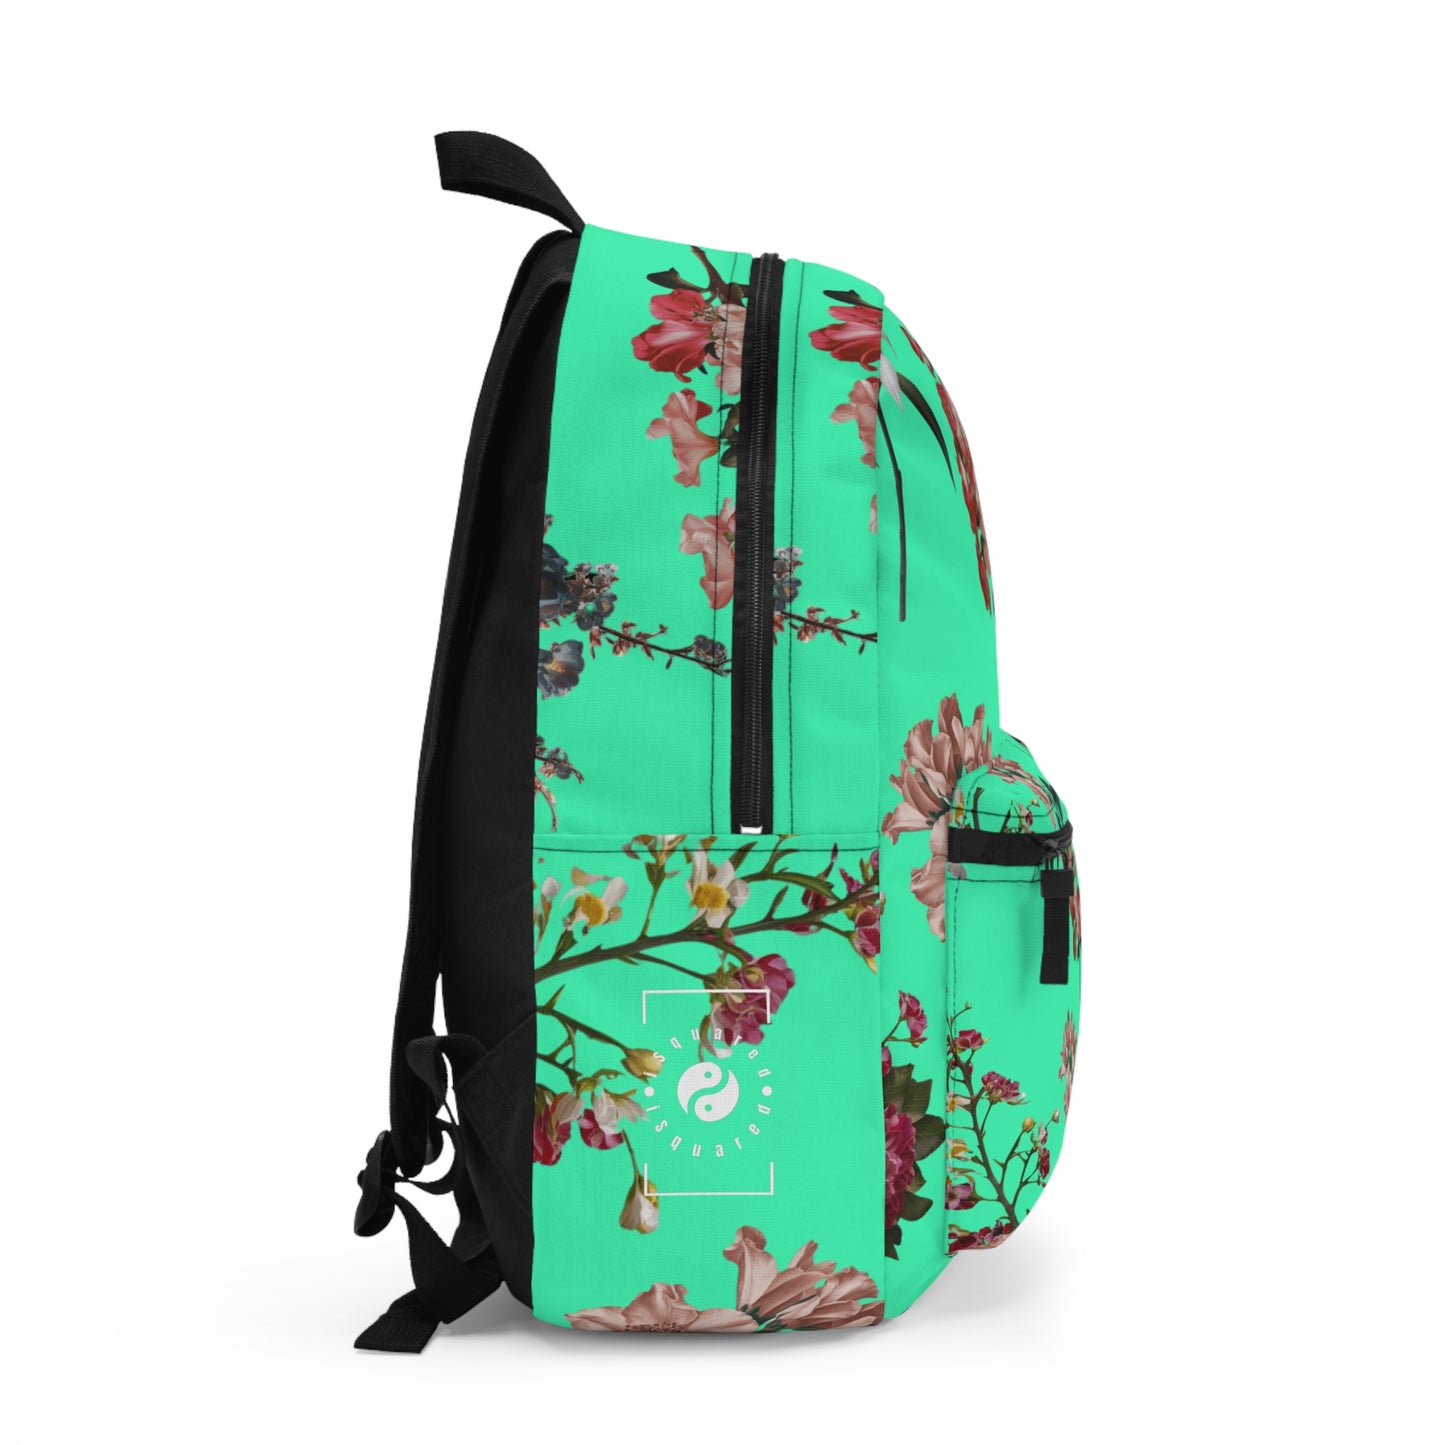 Botanicals on Turquoise - Backpack